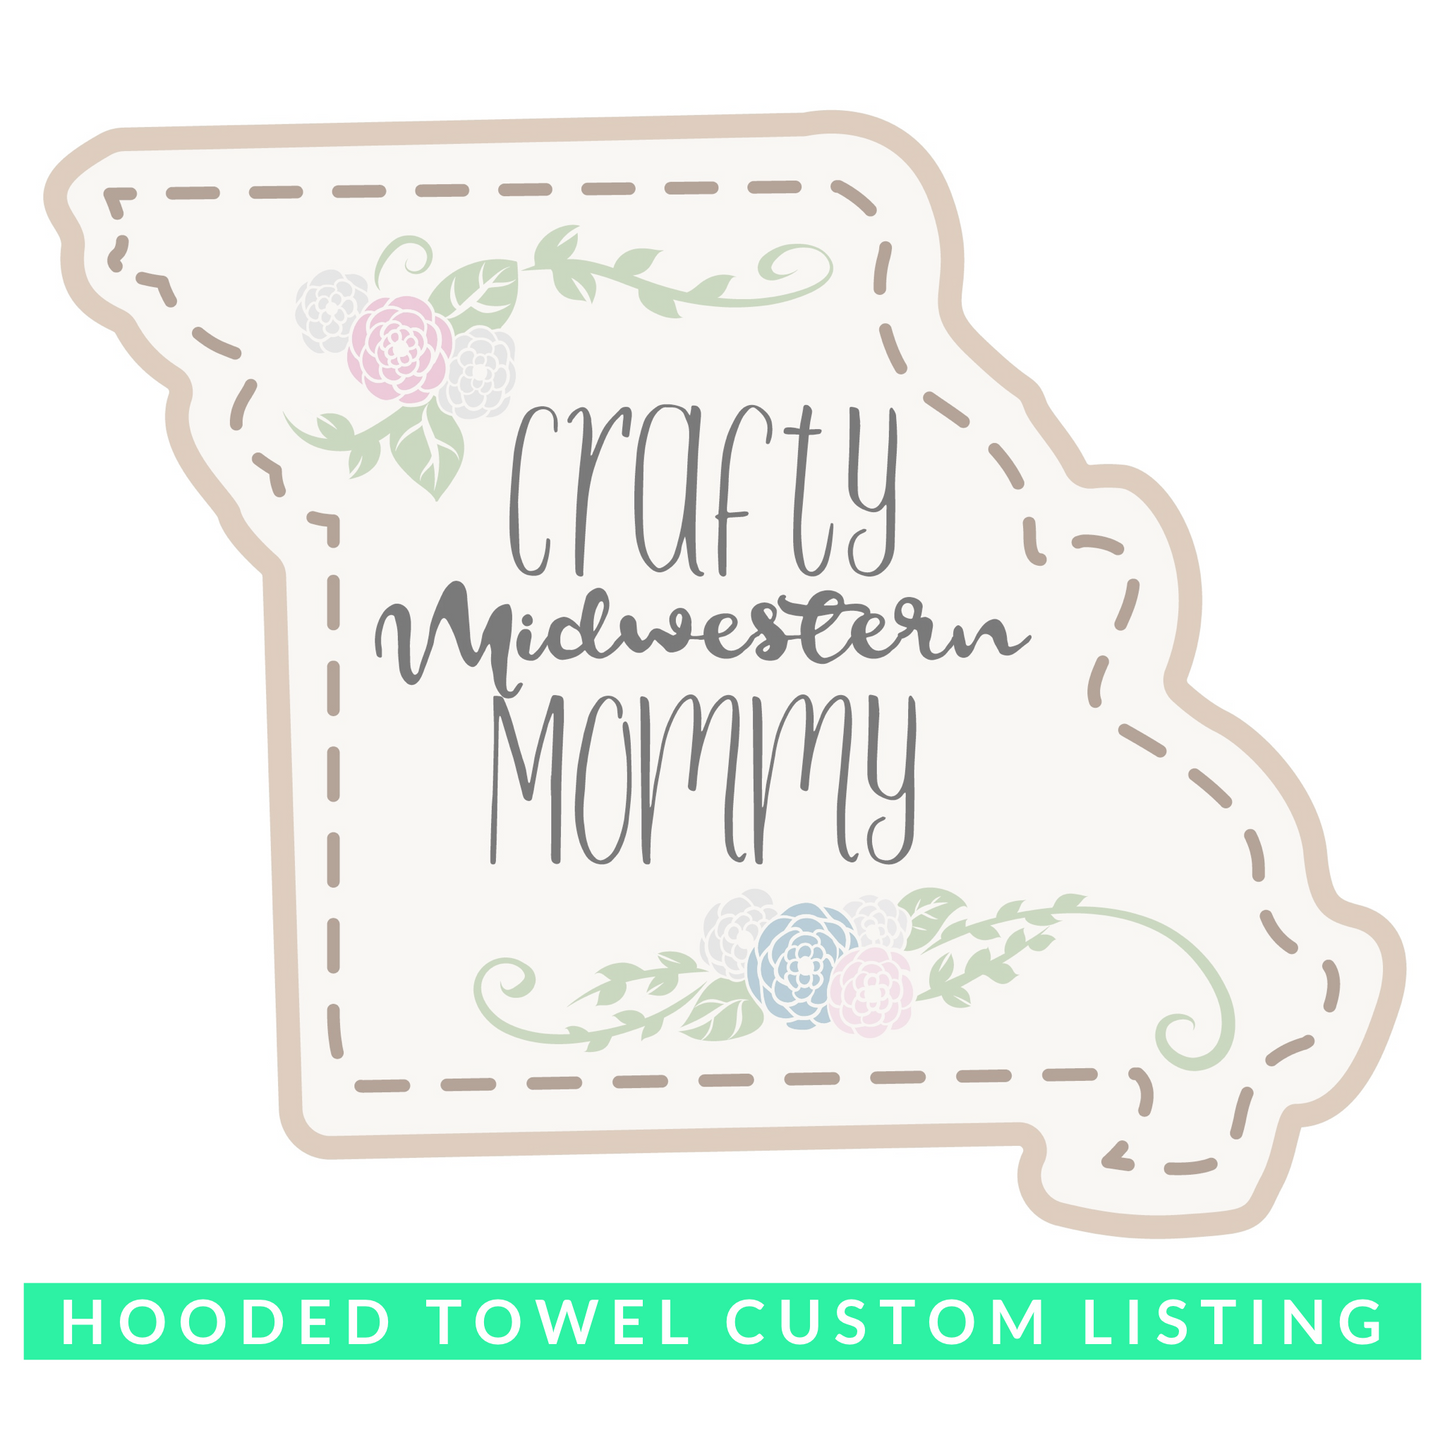 Custom Hooded Towel Order